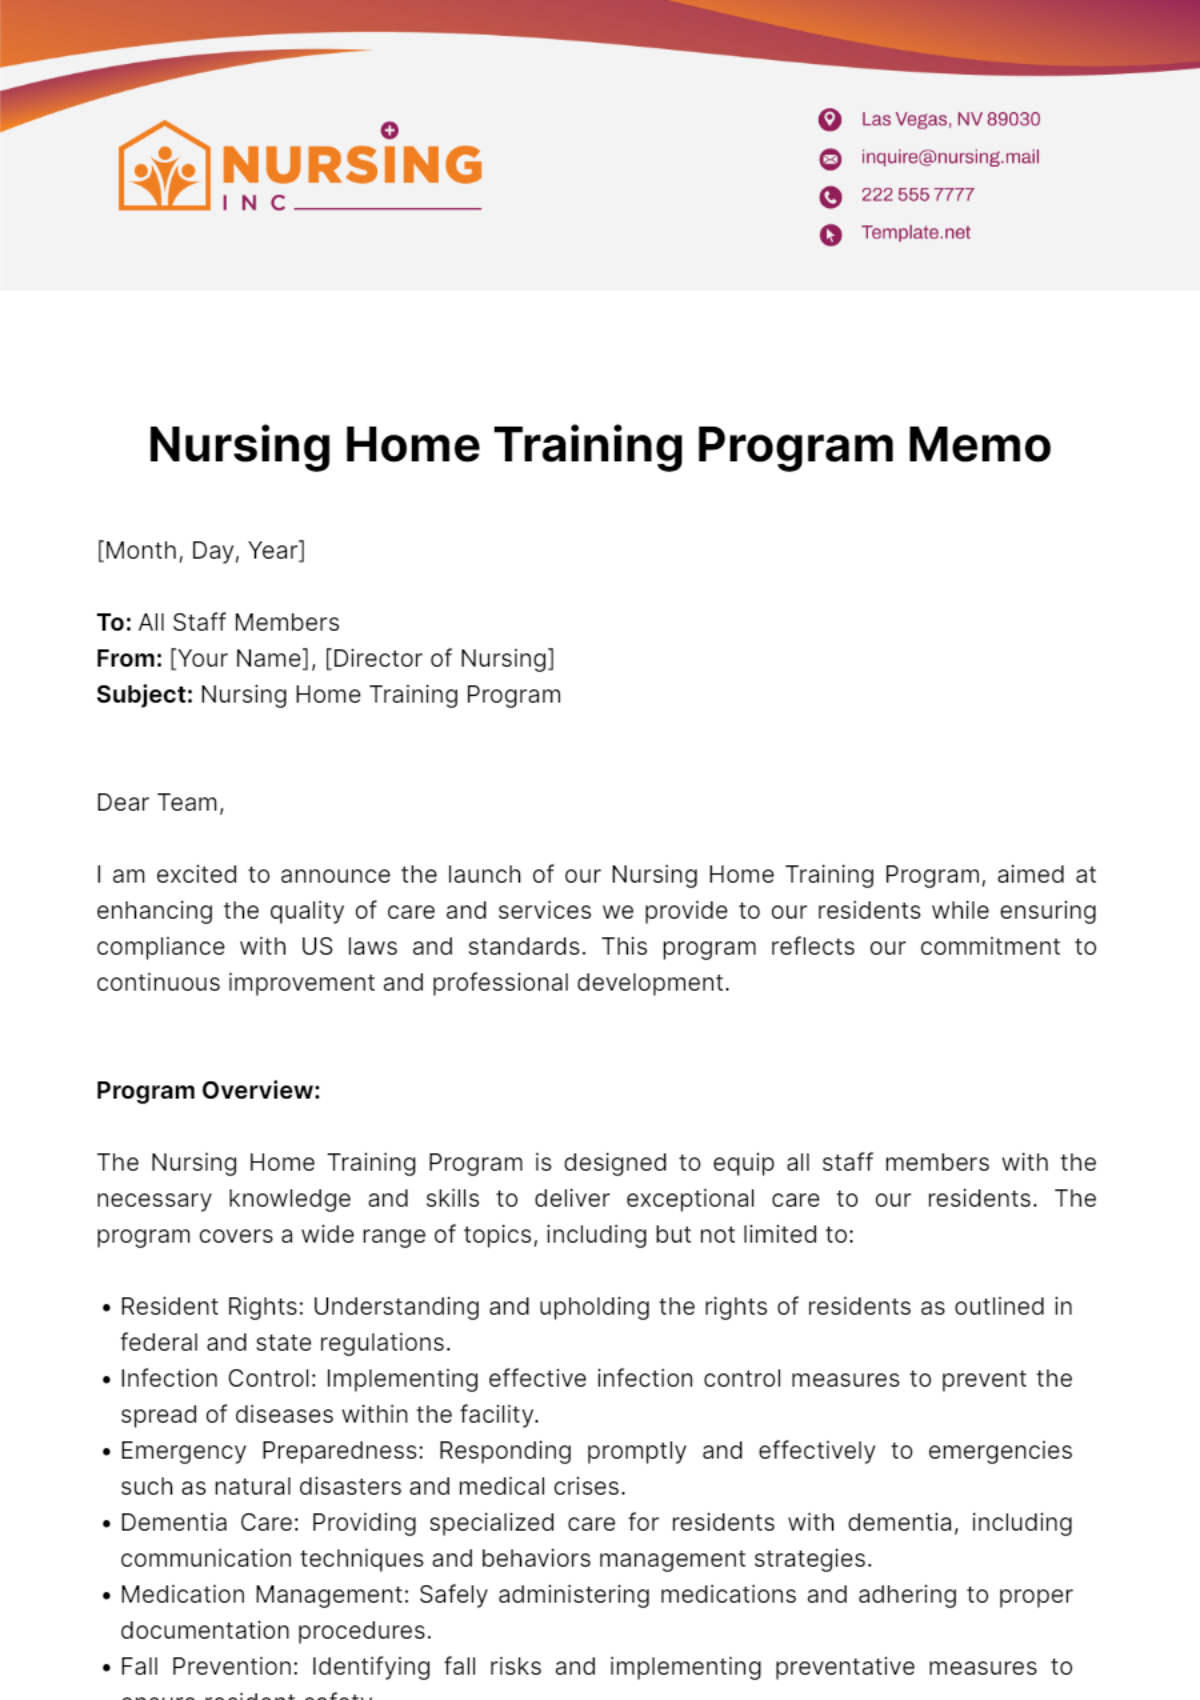 Nursing Home Training Program Memo Template